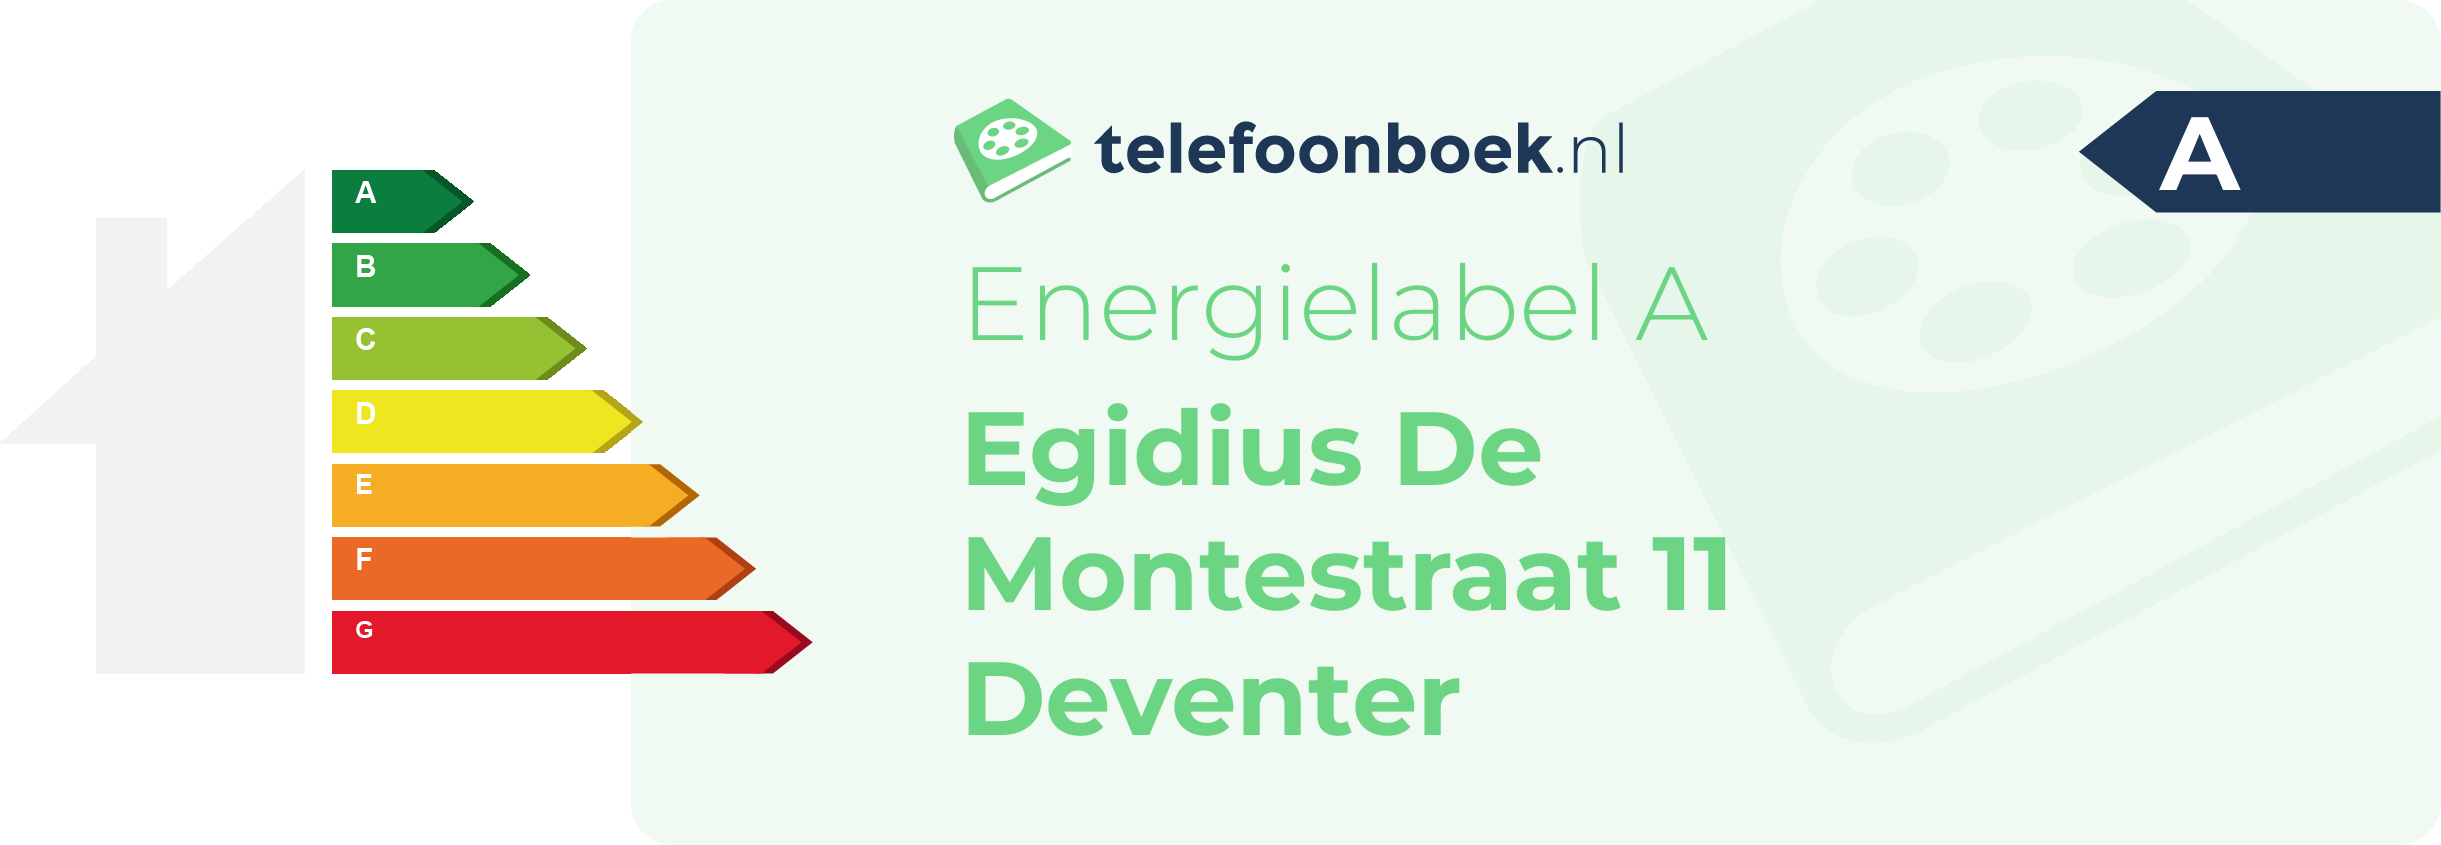 Energielabel Egidius De Montestraat 11 Deventer